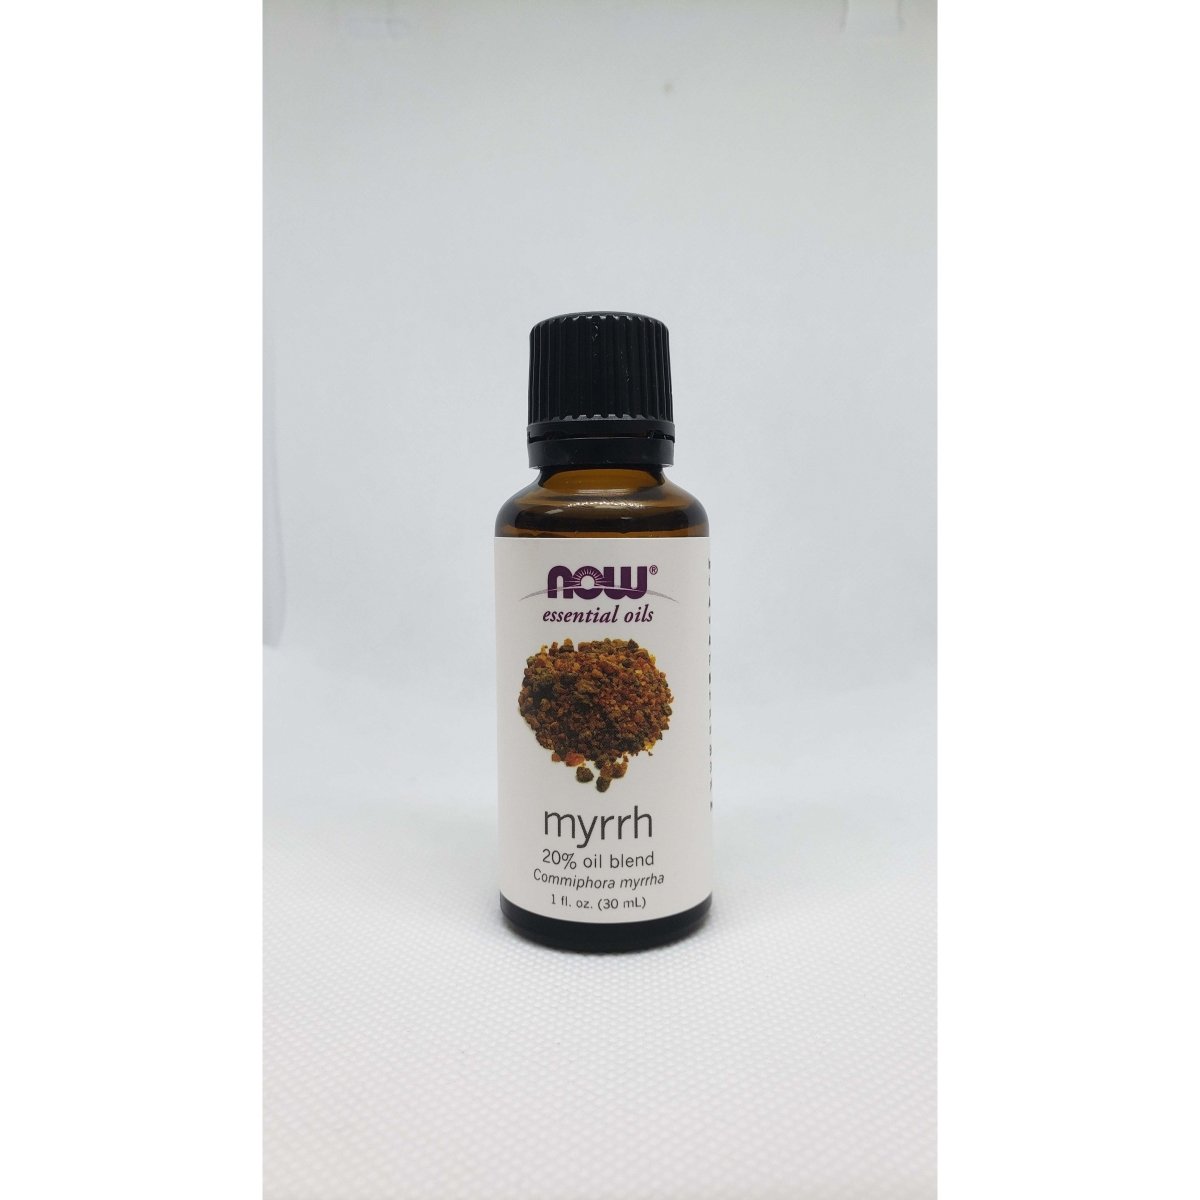 Now Essential Oil - Myrrh 20% Oil Blend - Commiphora Myrrha - 1oz